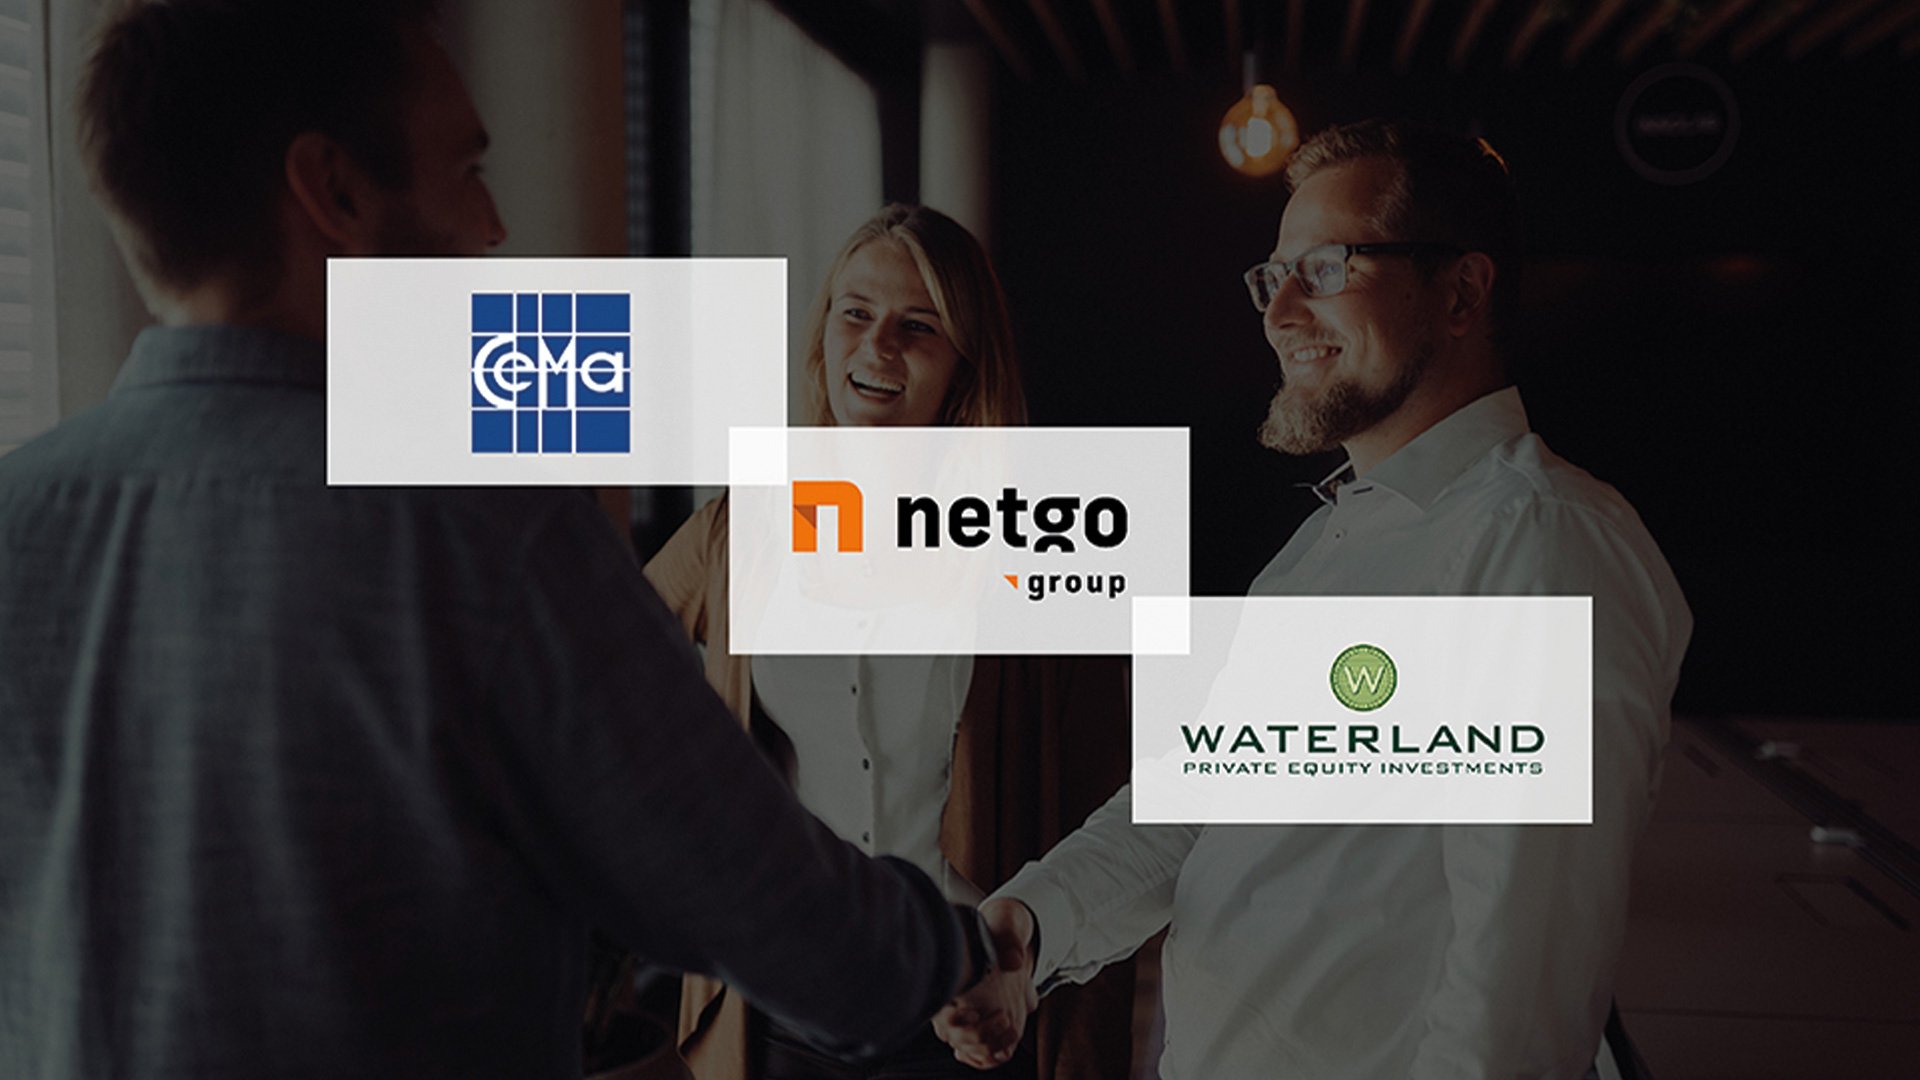 netgo group wächst weiter: Waterland-Portfoliounternehmen geht Wachstumspartnerschaft mit CEMA AG ein.